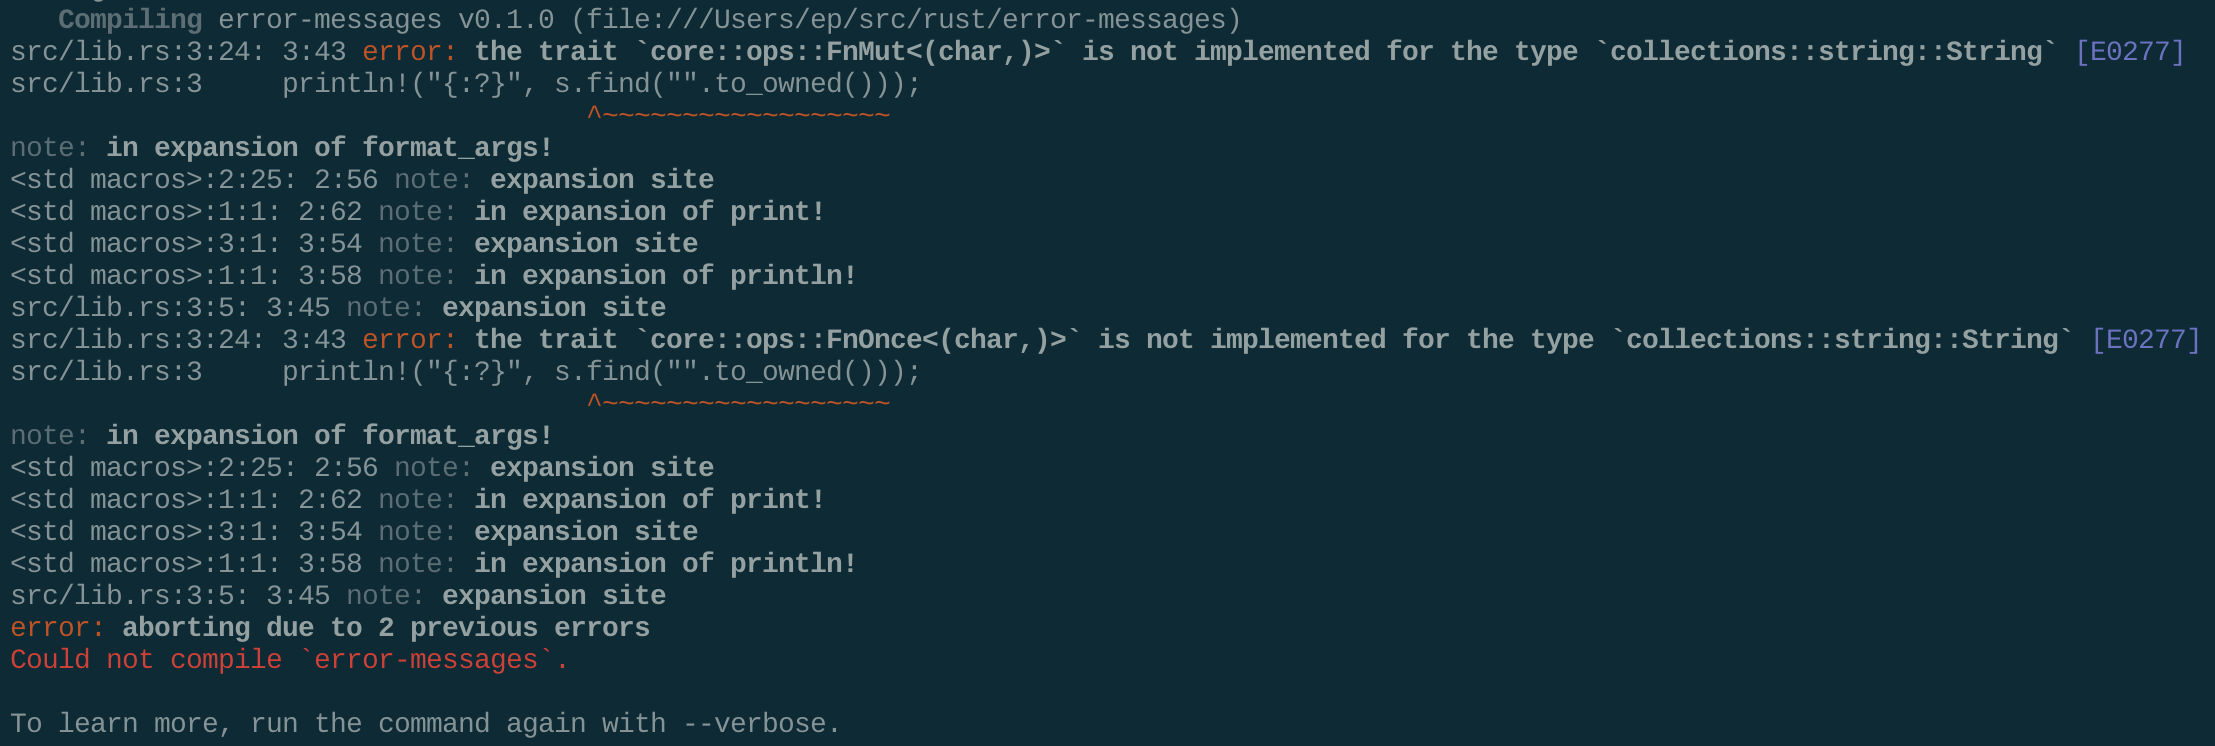 A terminal screenshot of the 1.2.0 error message.